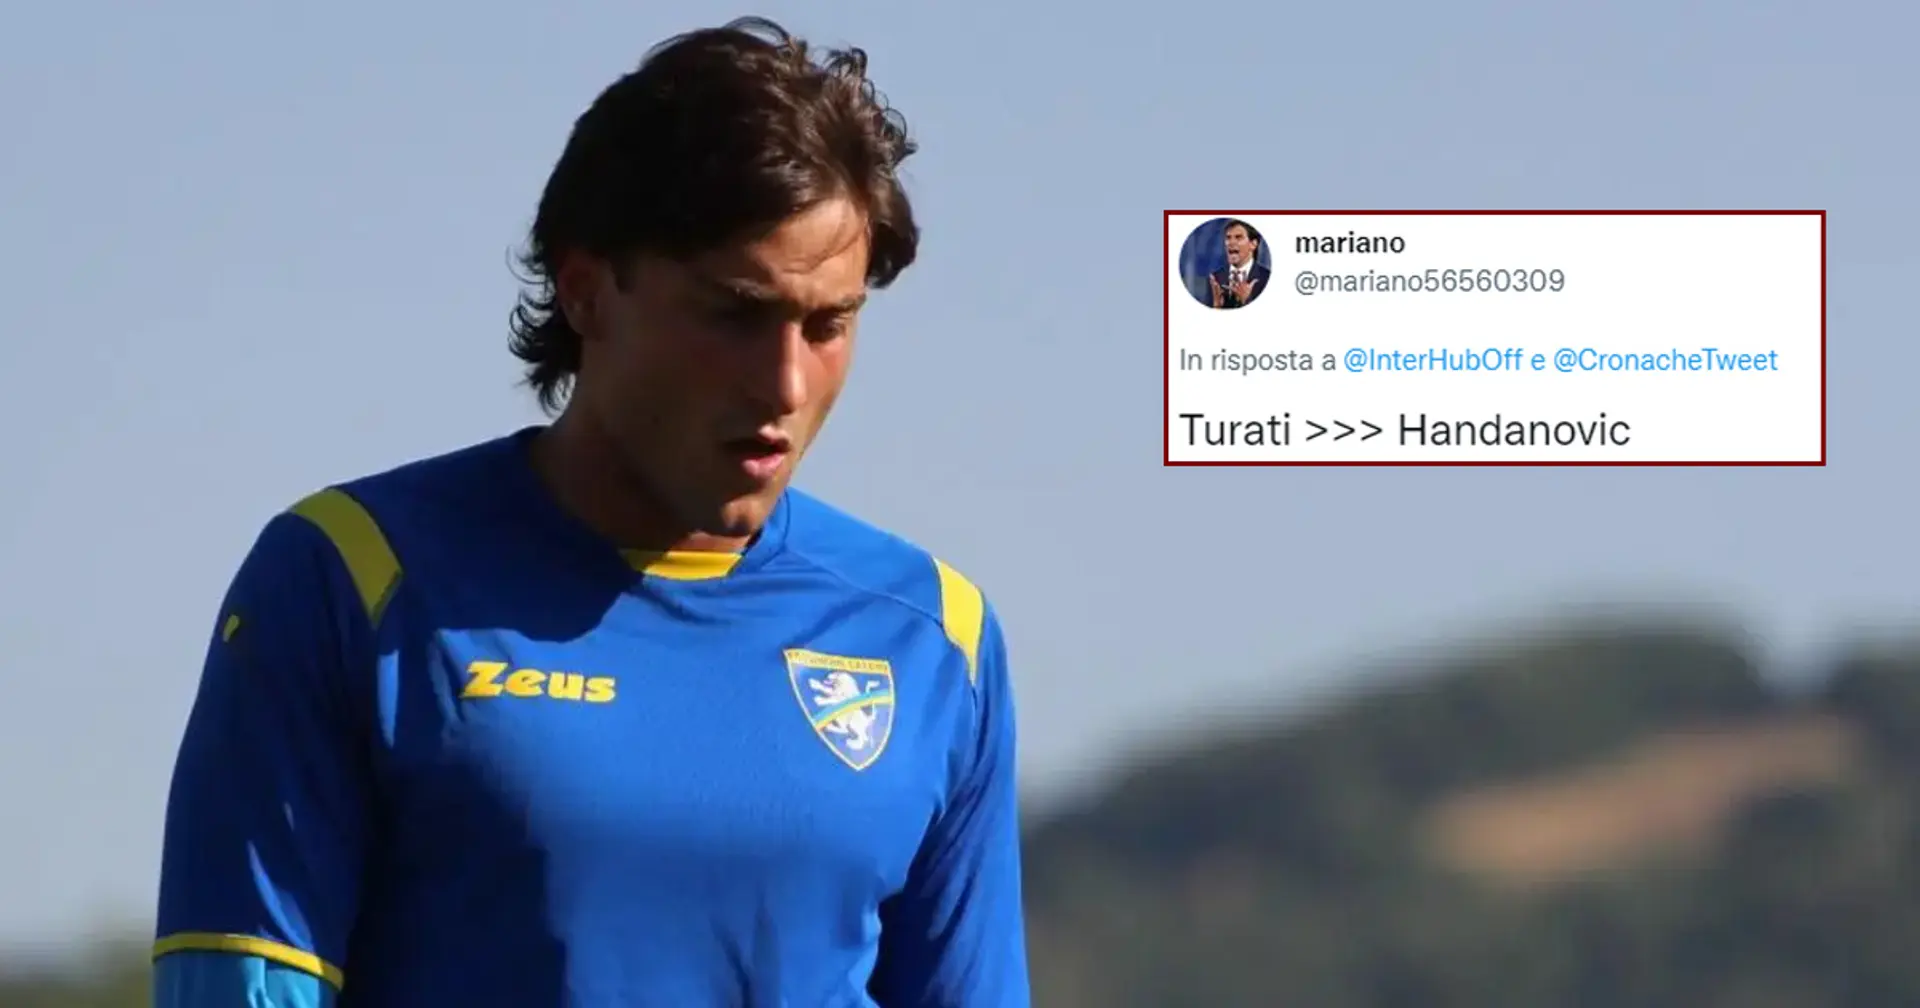 "Sogno di essere Capitano dell'Inter!": la rivelazione di Turati, portiere del Frosinone, fa impazzire i tifosi